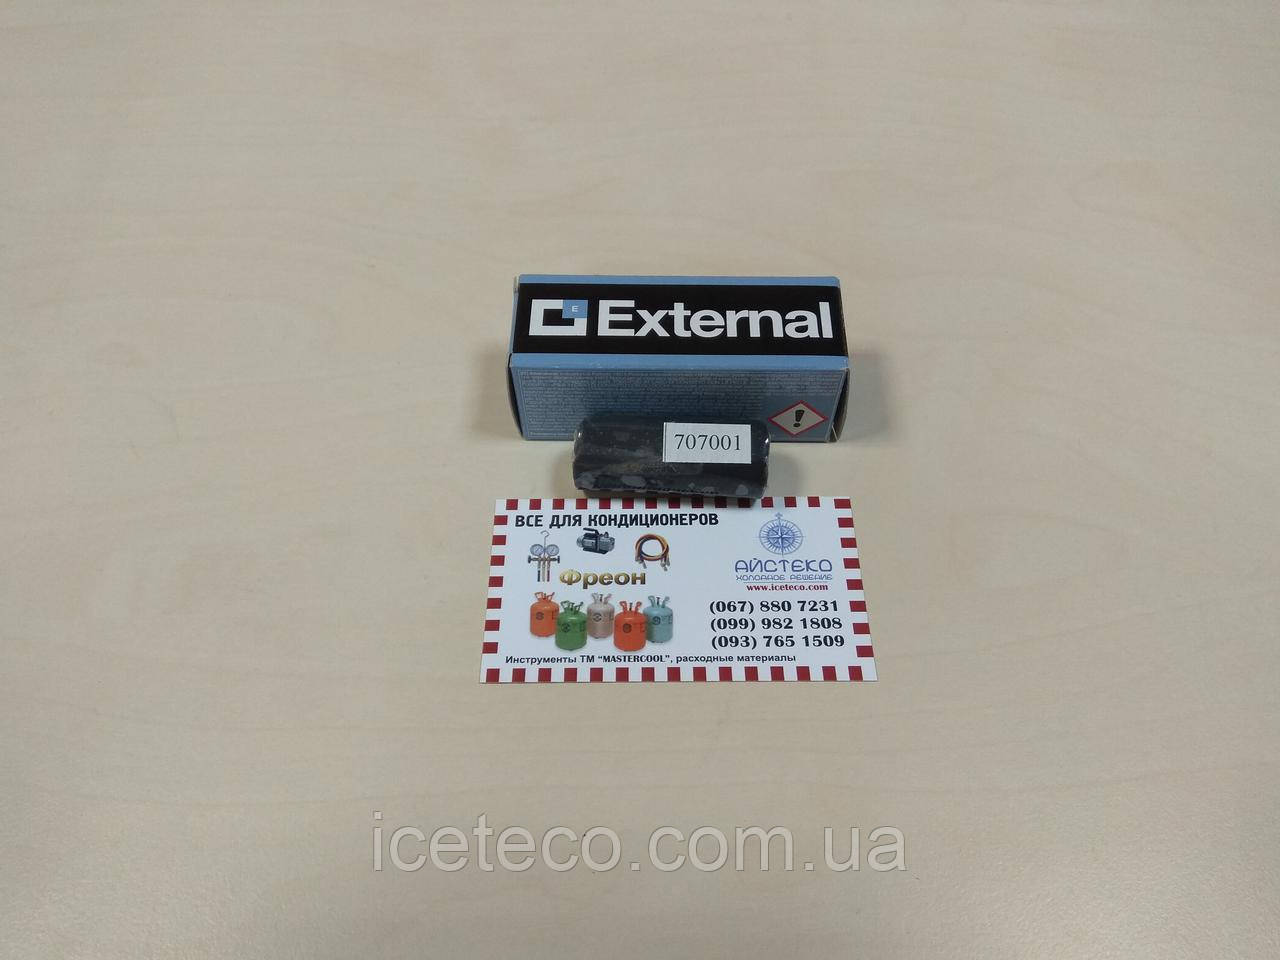 Герметик External зовнішній для R600 / R290 (20грам) TR1166.01 Errecom